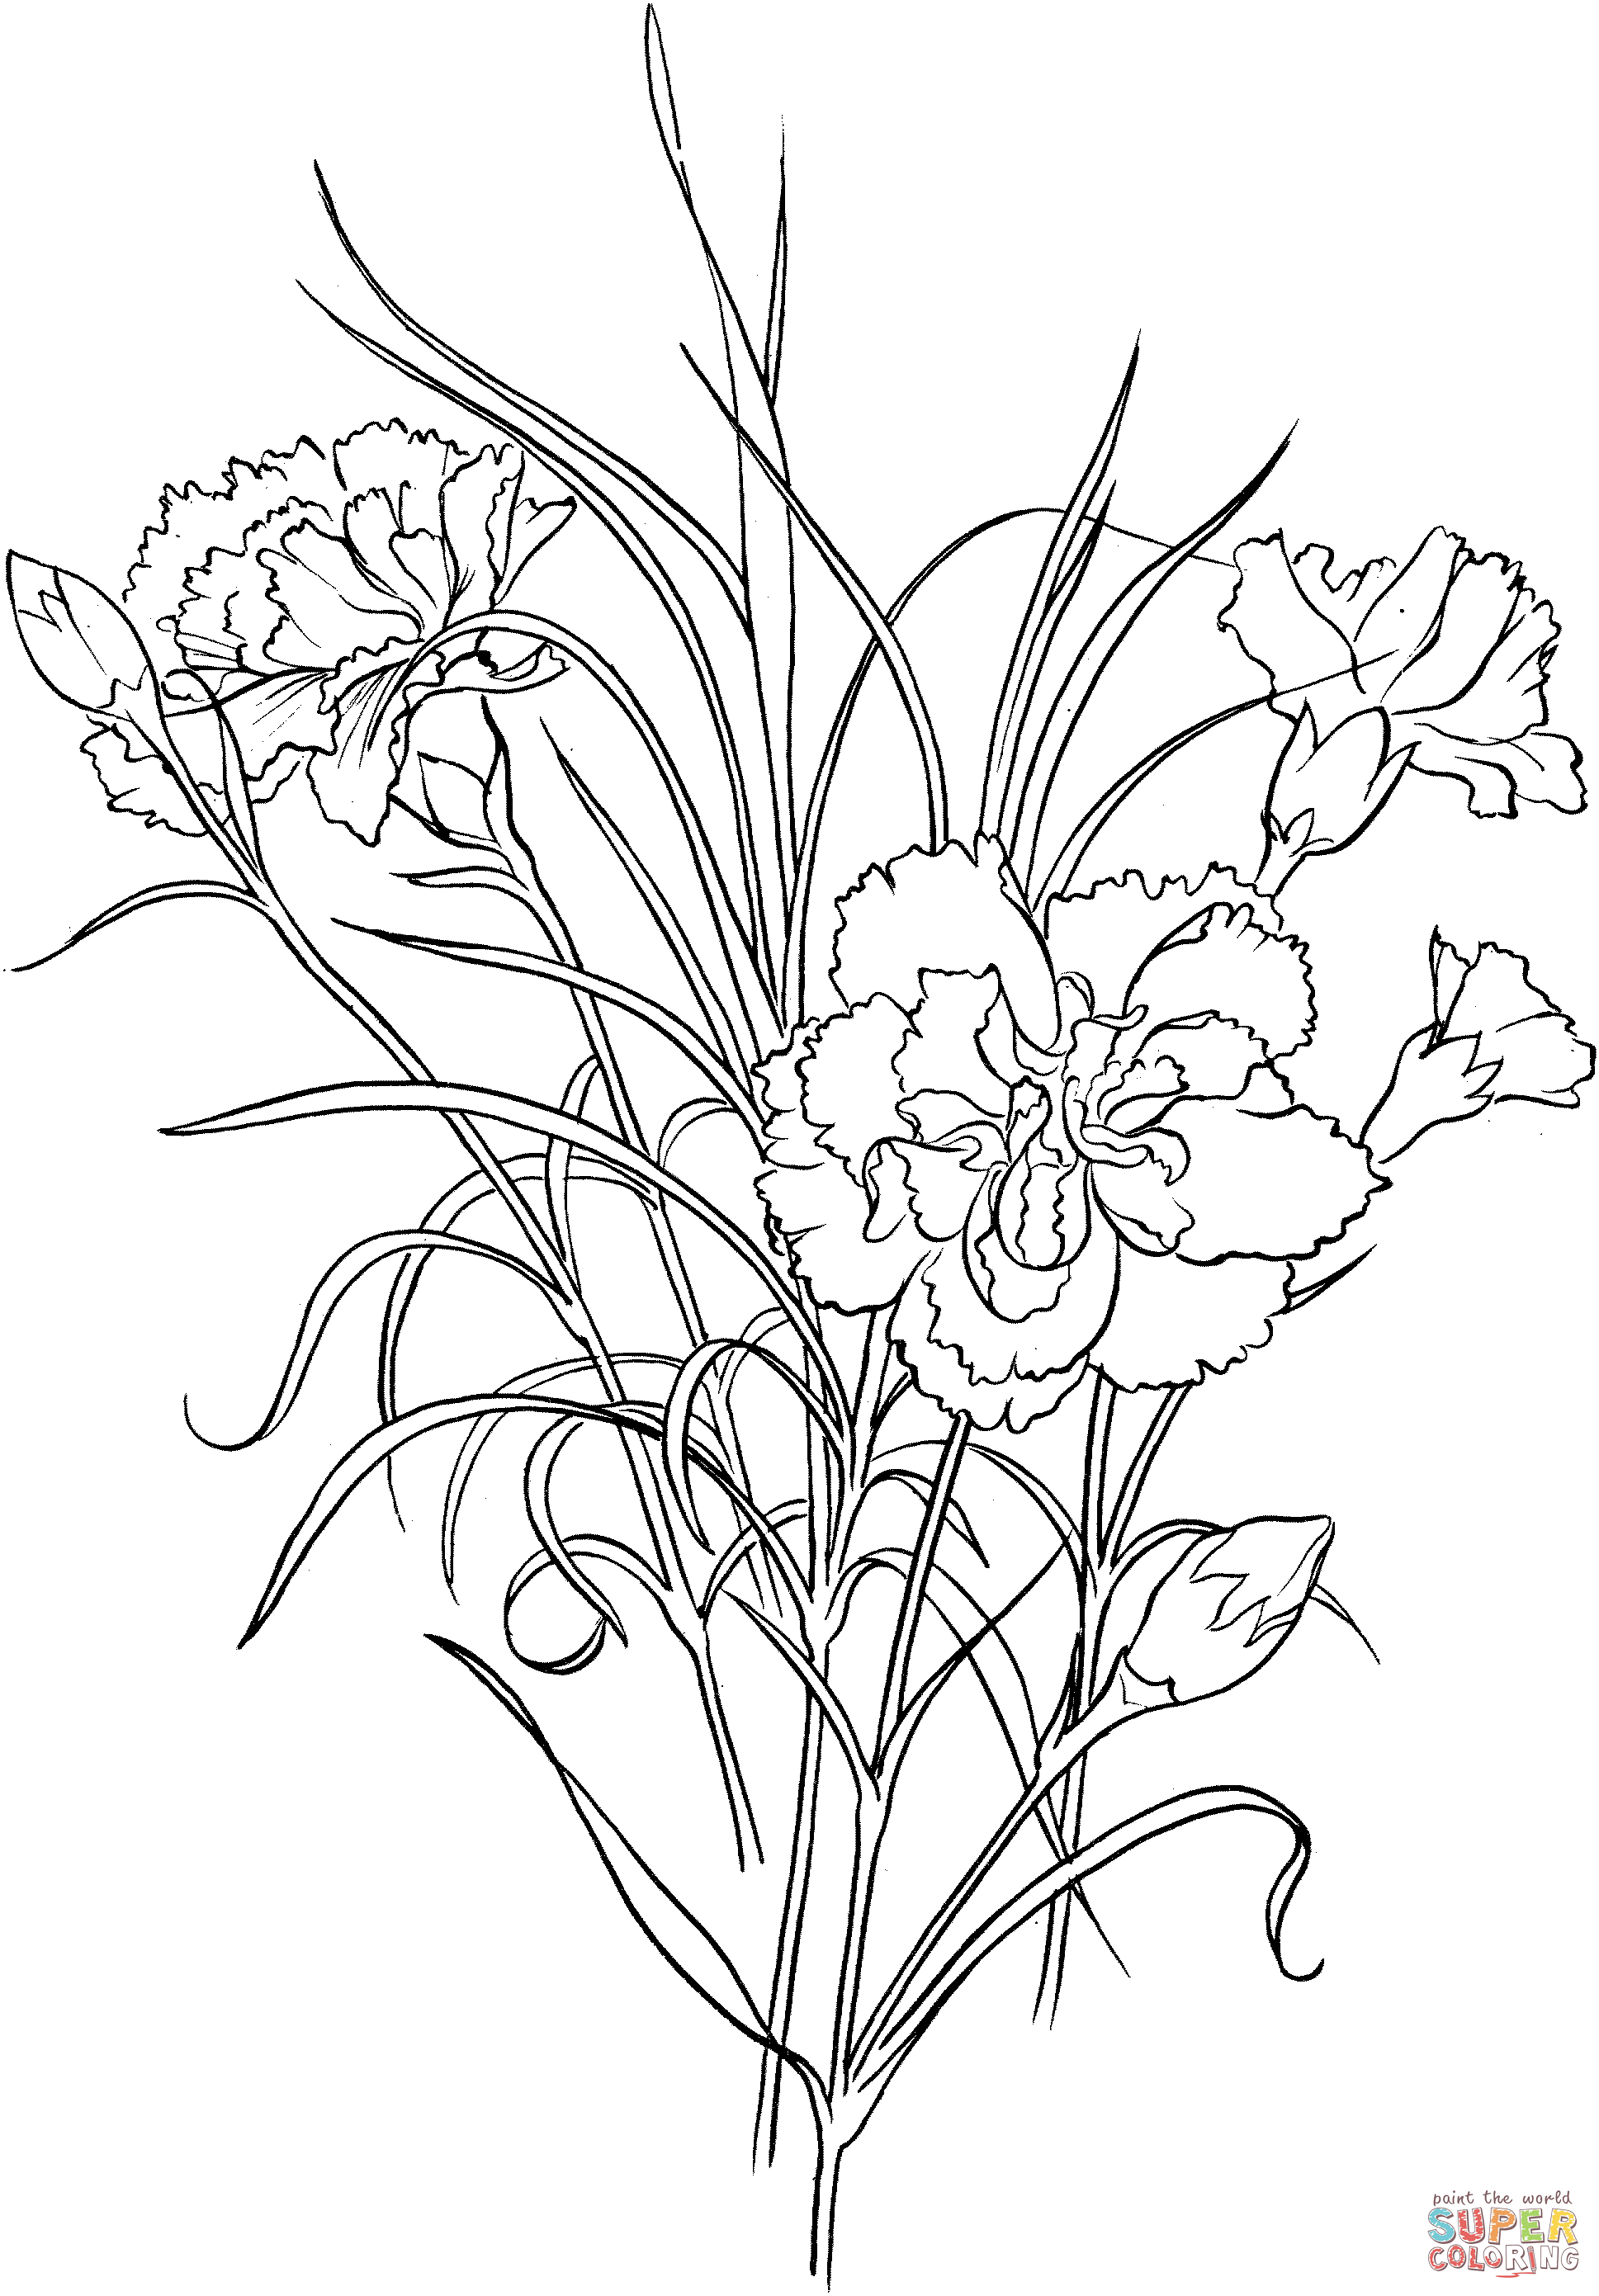 Dianthus Caryophyllus Clove Clavel rosado de Clavel